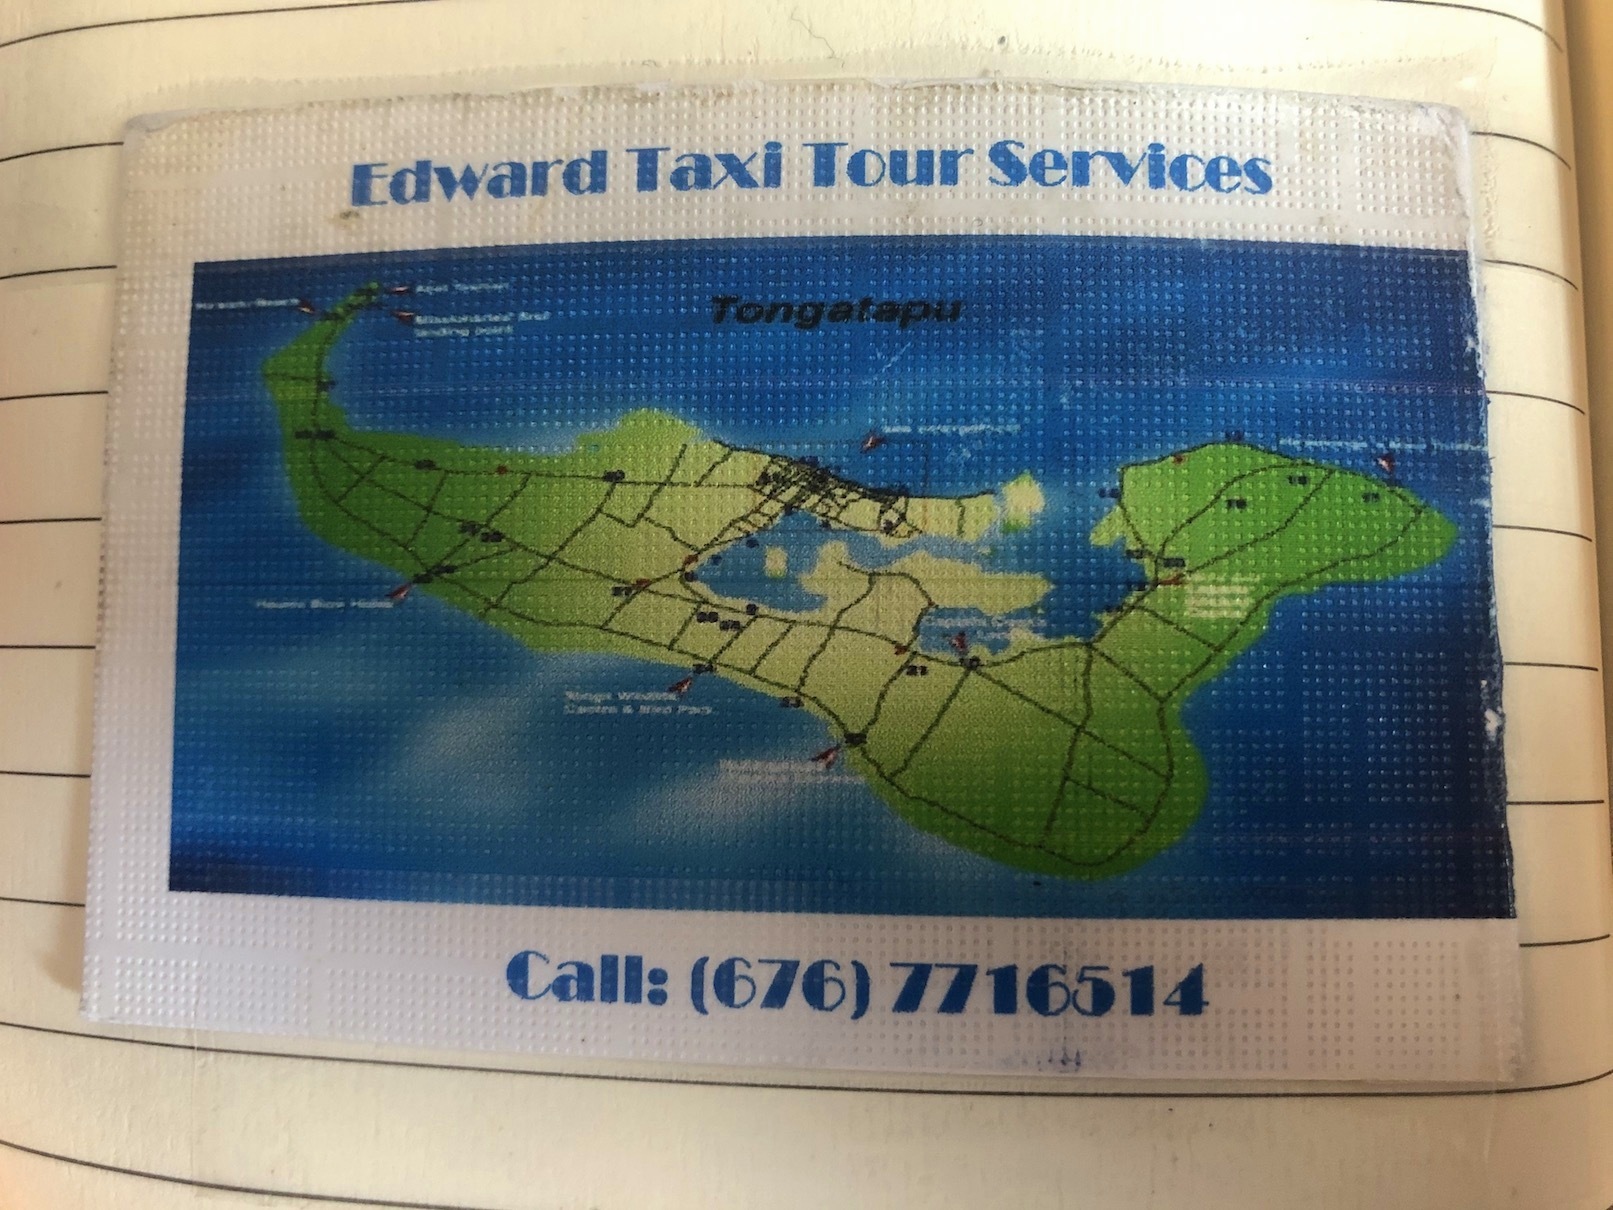 Edward Taxi card